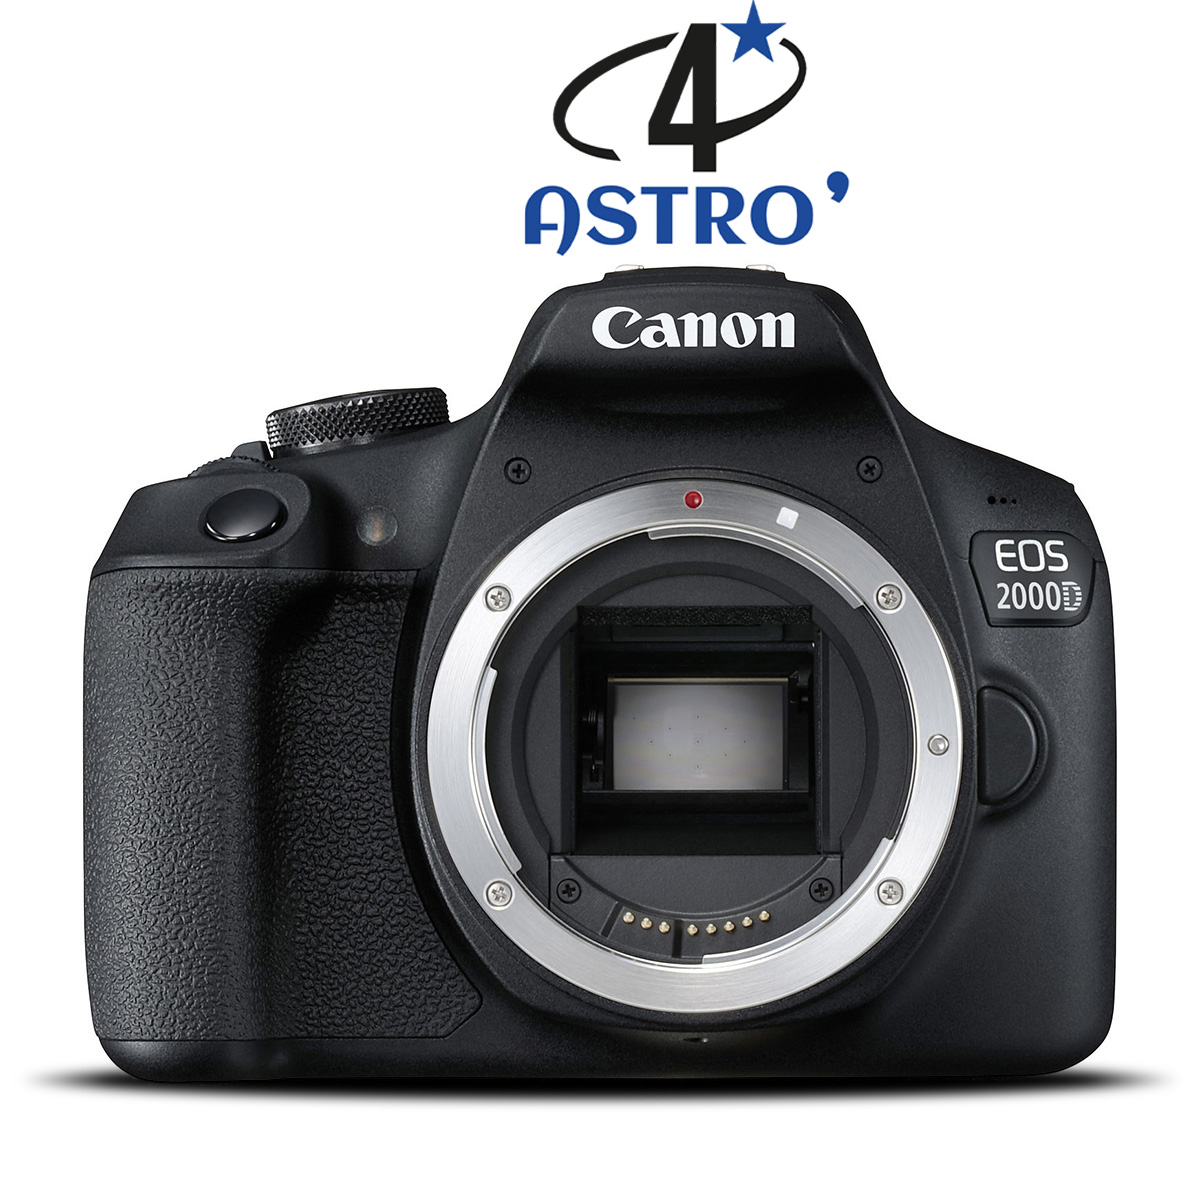 APN Canon EOS 2000D neuf défiltré + refiltré 4'Astro